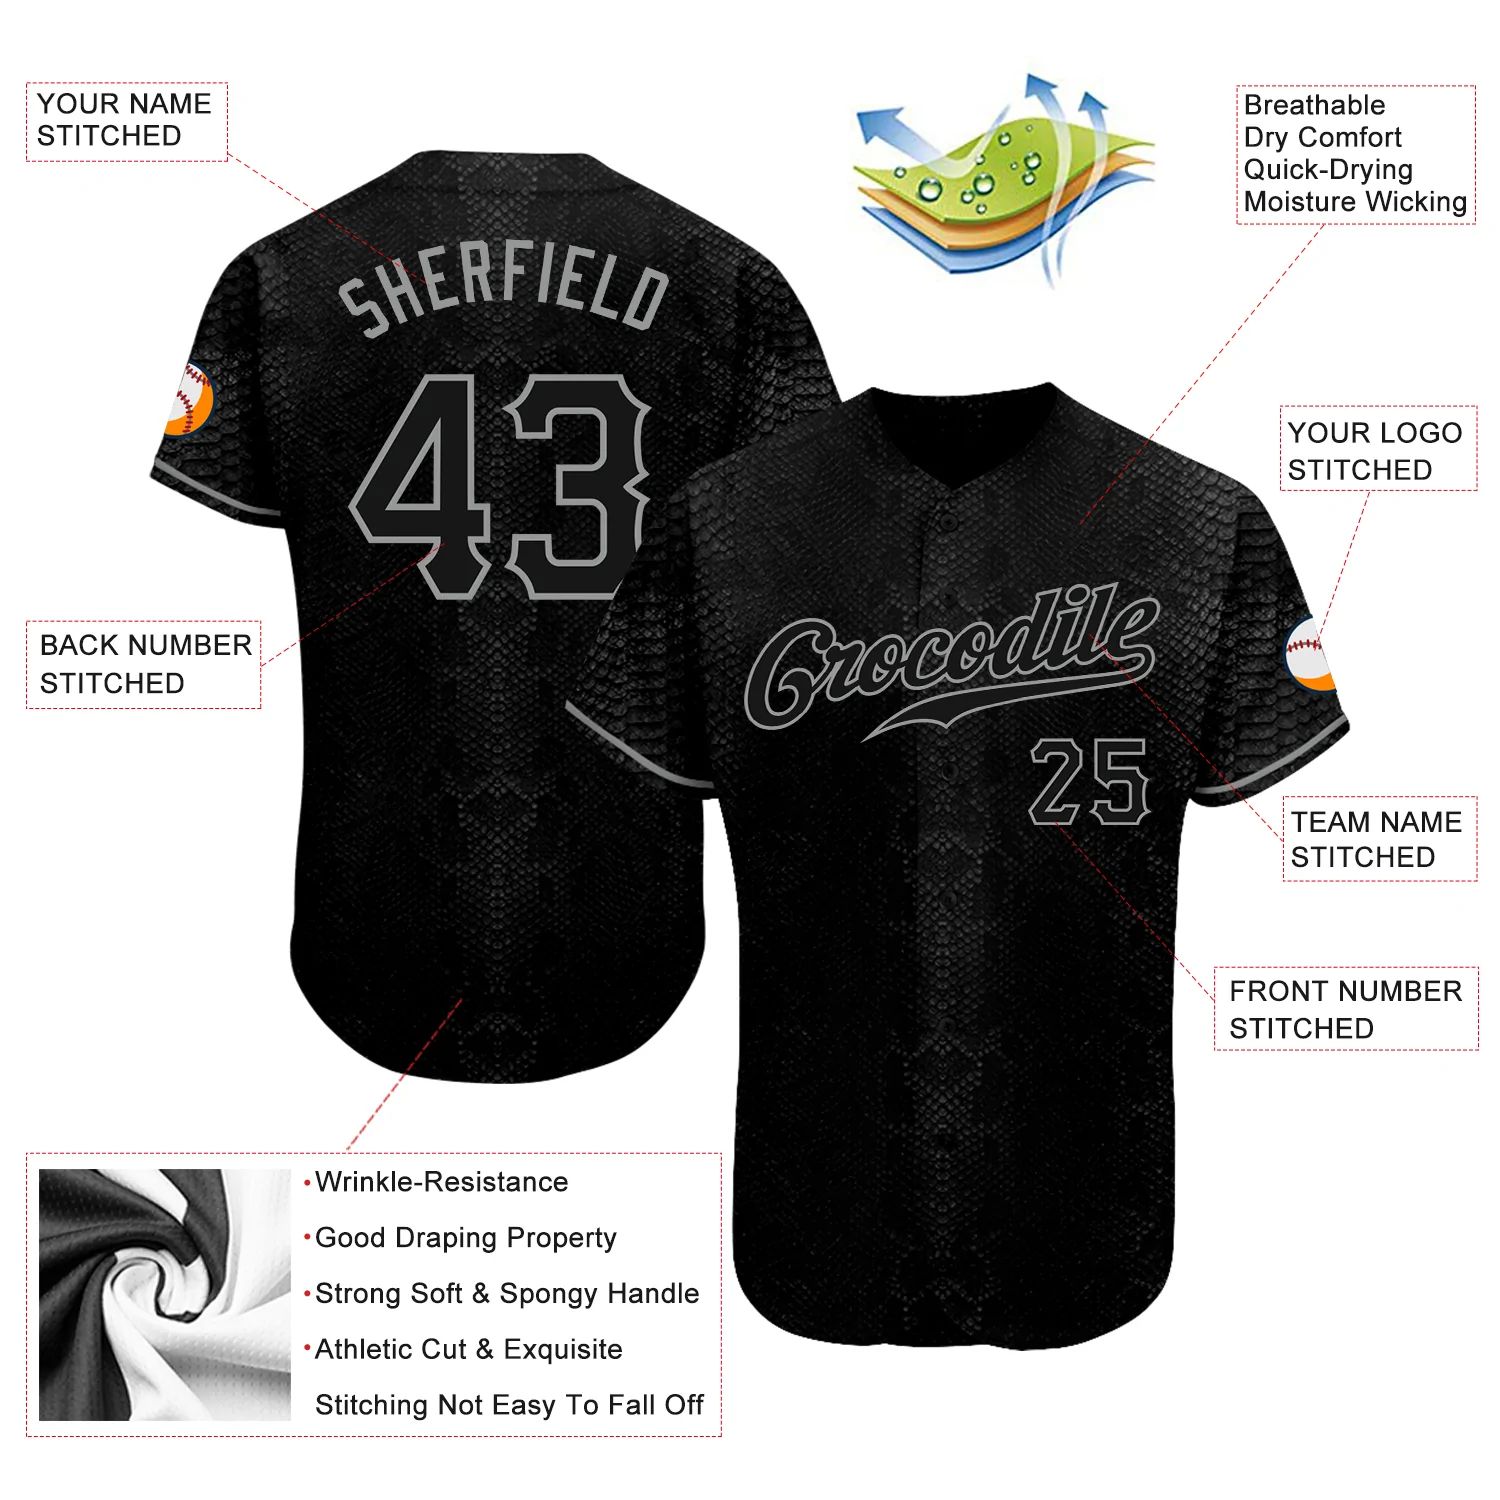 build-gray-black-baseball-black-jersey-authentic-snakeskin-snakeskin0003-online-3.jpg